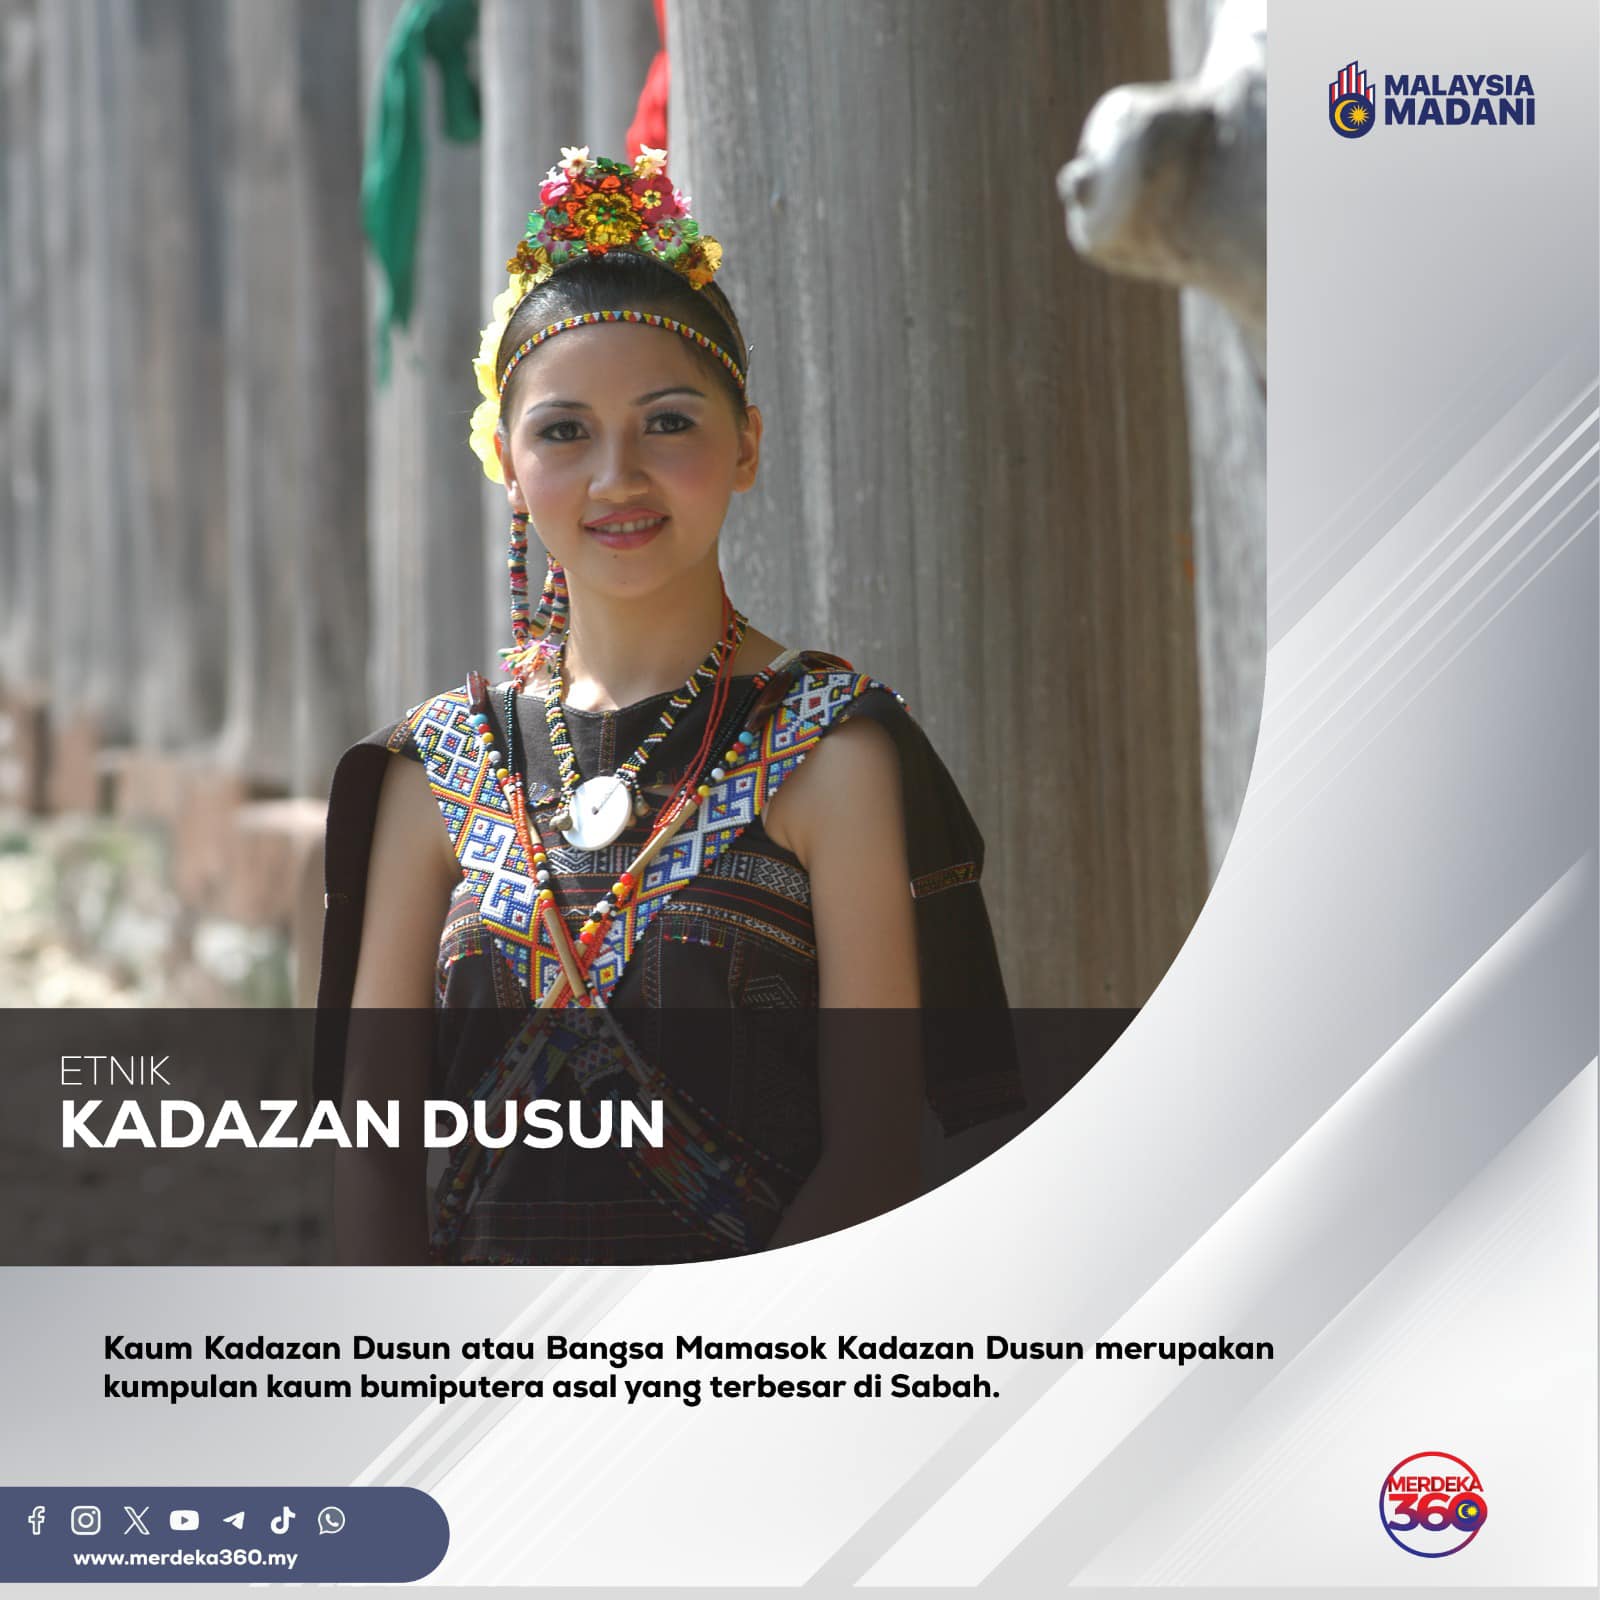 Kadazan Dusun